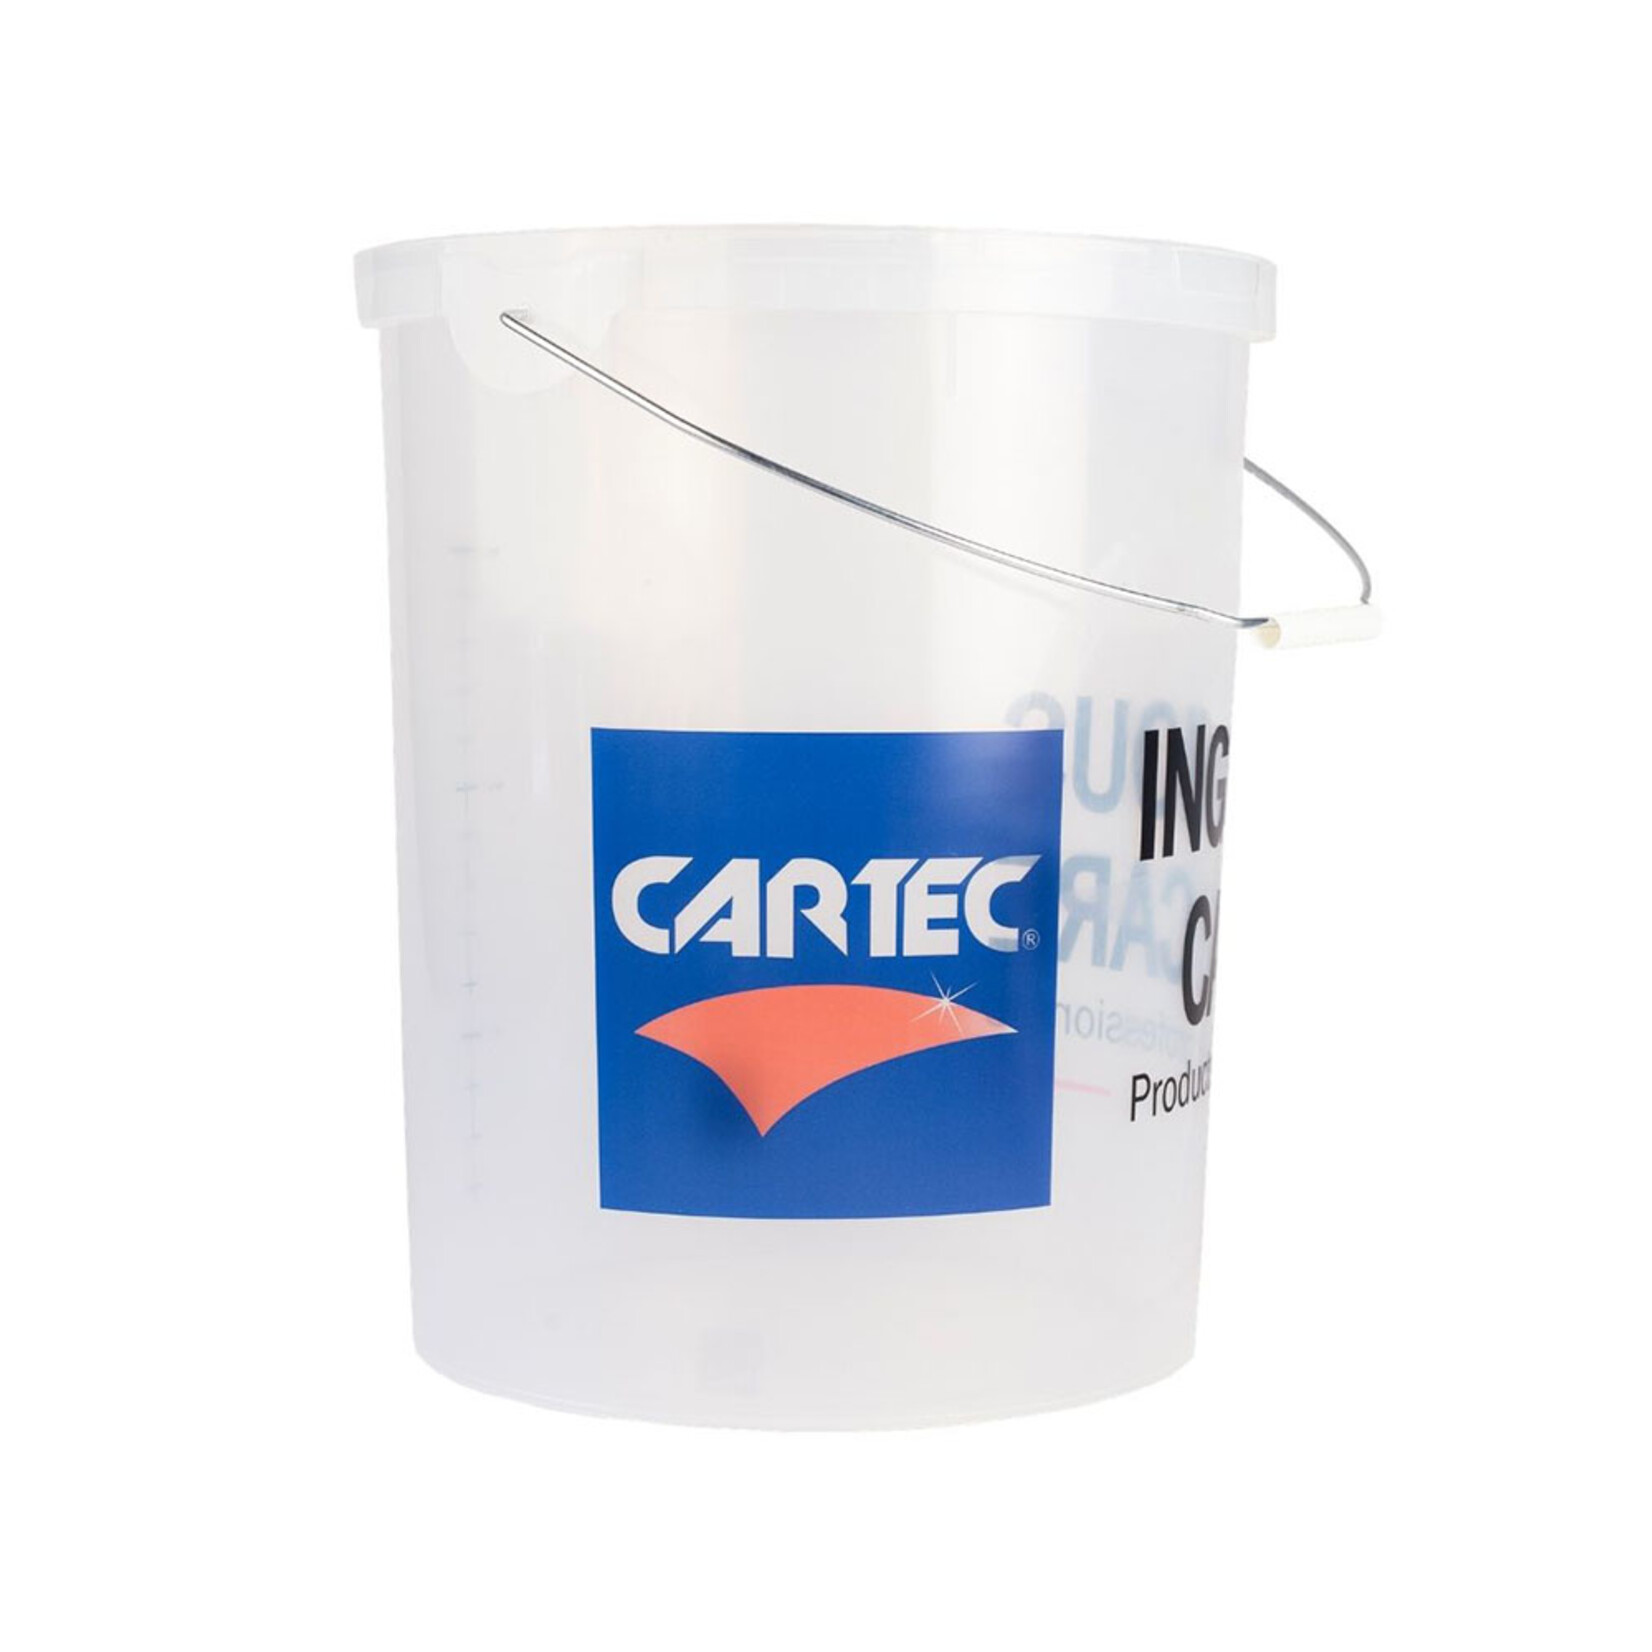 CARTEC Autowas emmer Cartec 19 liter